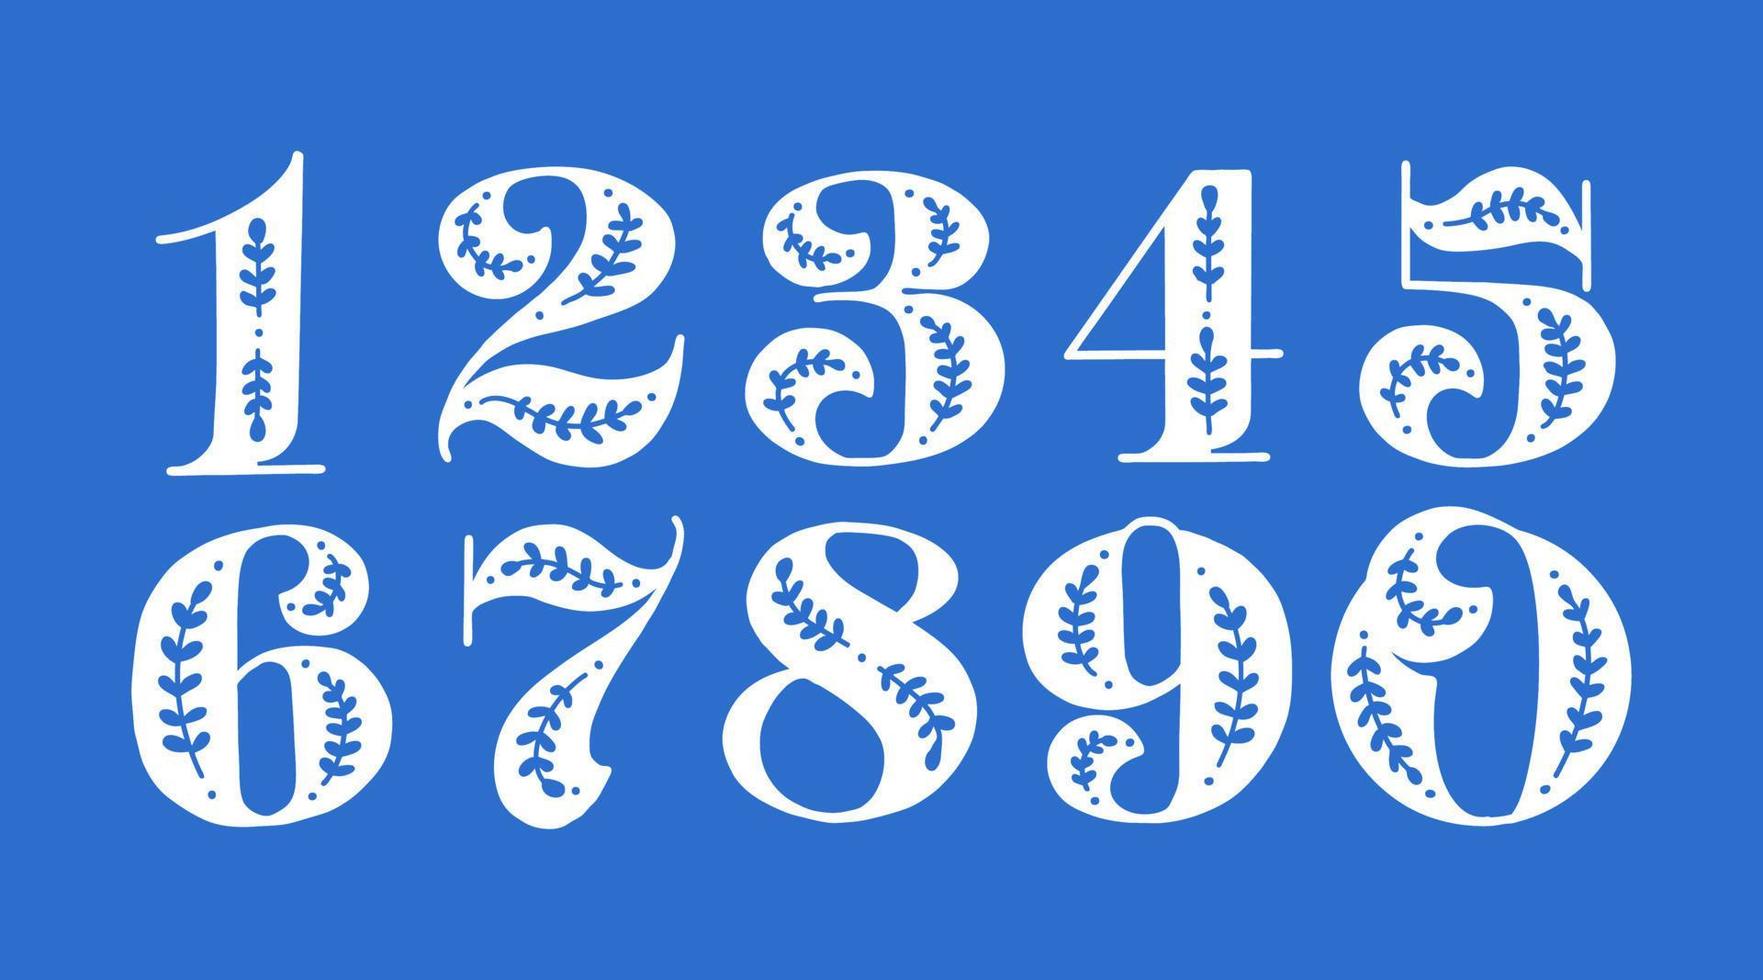 Folklore-Reihe von Zahlen und Zahlen im skandinavischen Stil. Volksmuster auf blauem Hintergrund. Schriftart für Mathematik, Algebra und Taschenrechner vektor